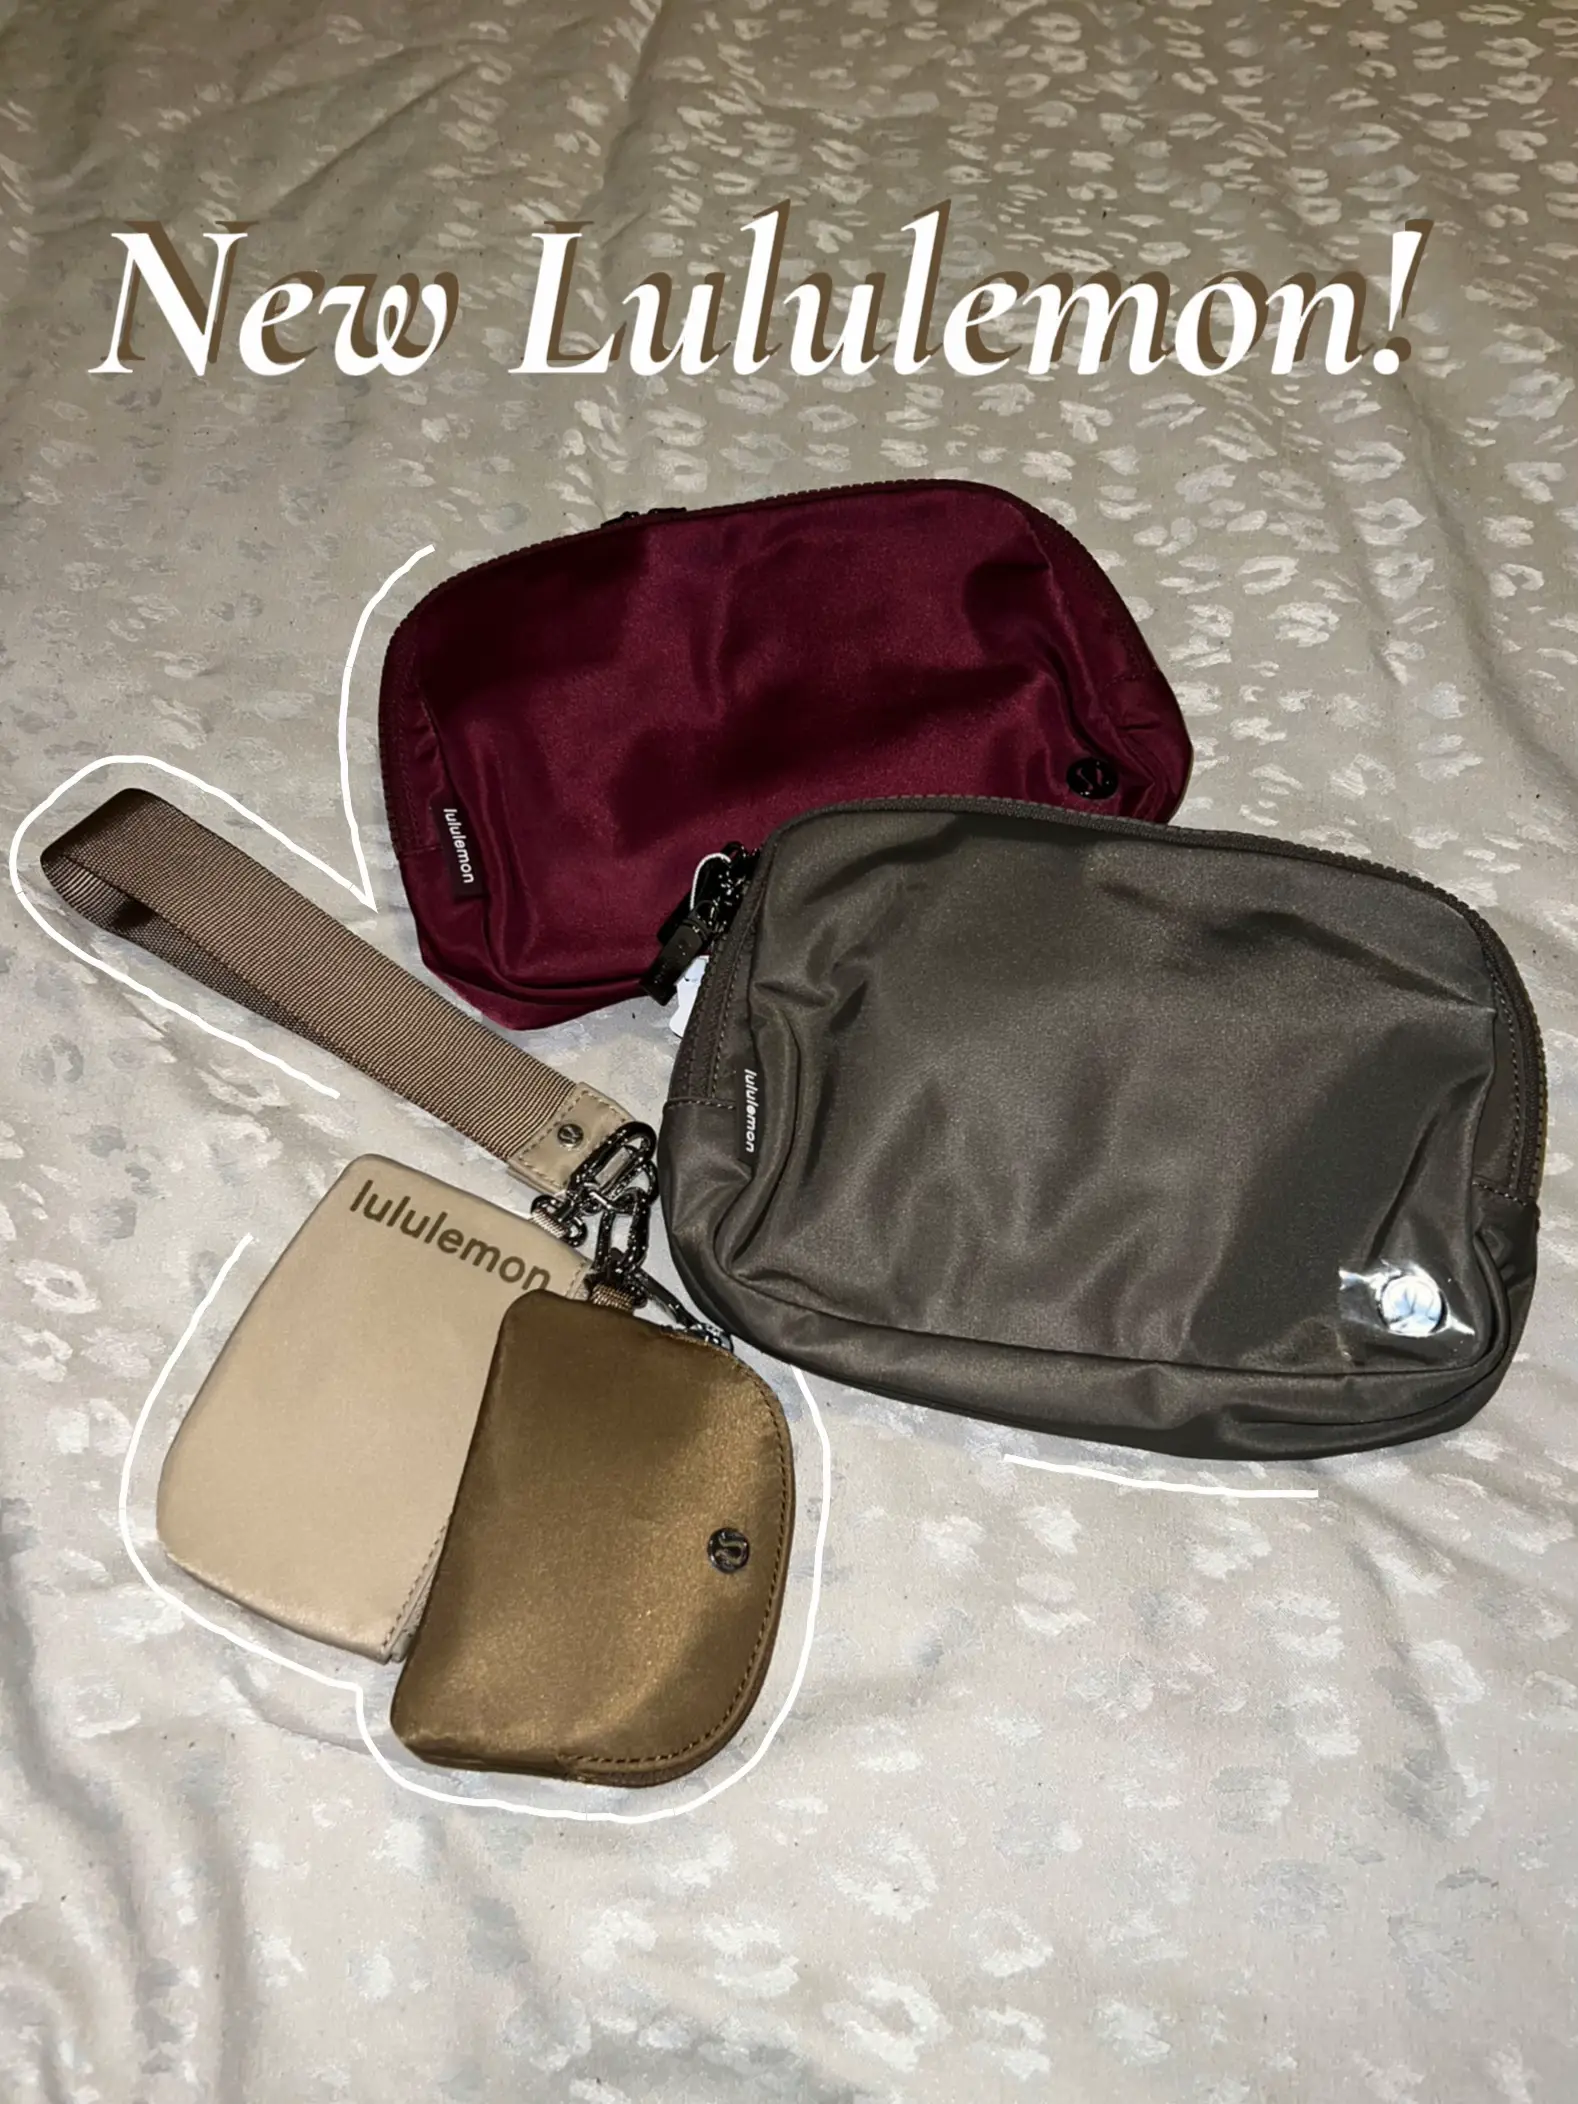 New fall lululemon belt bag colors!